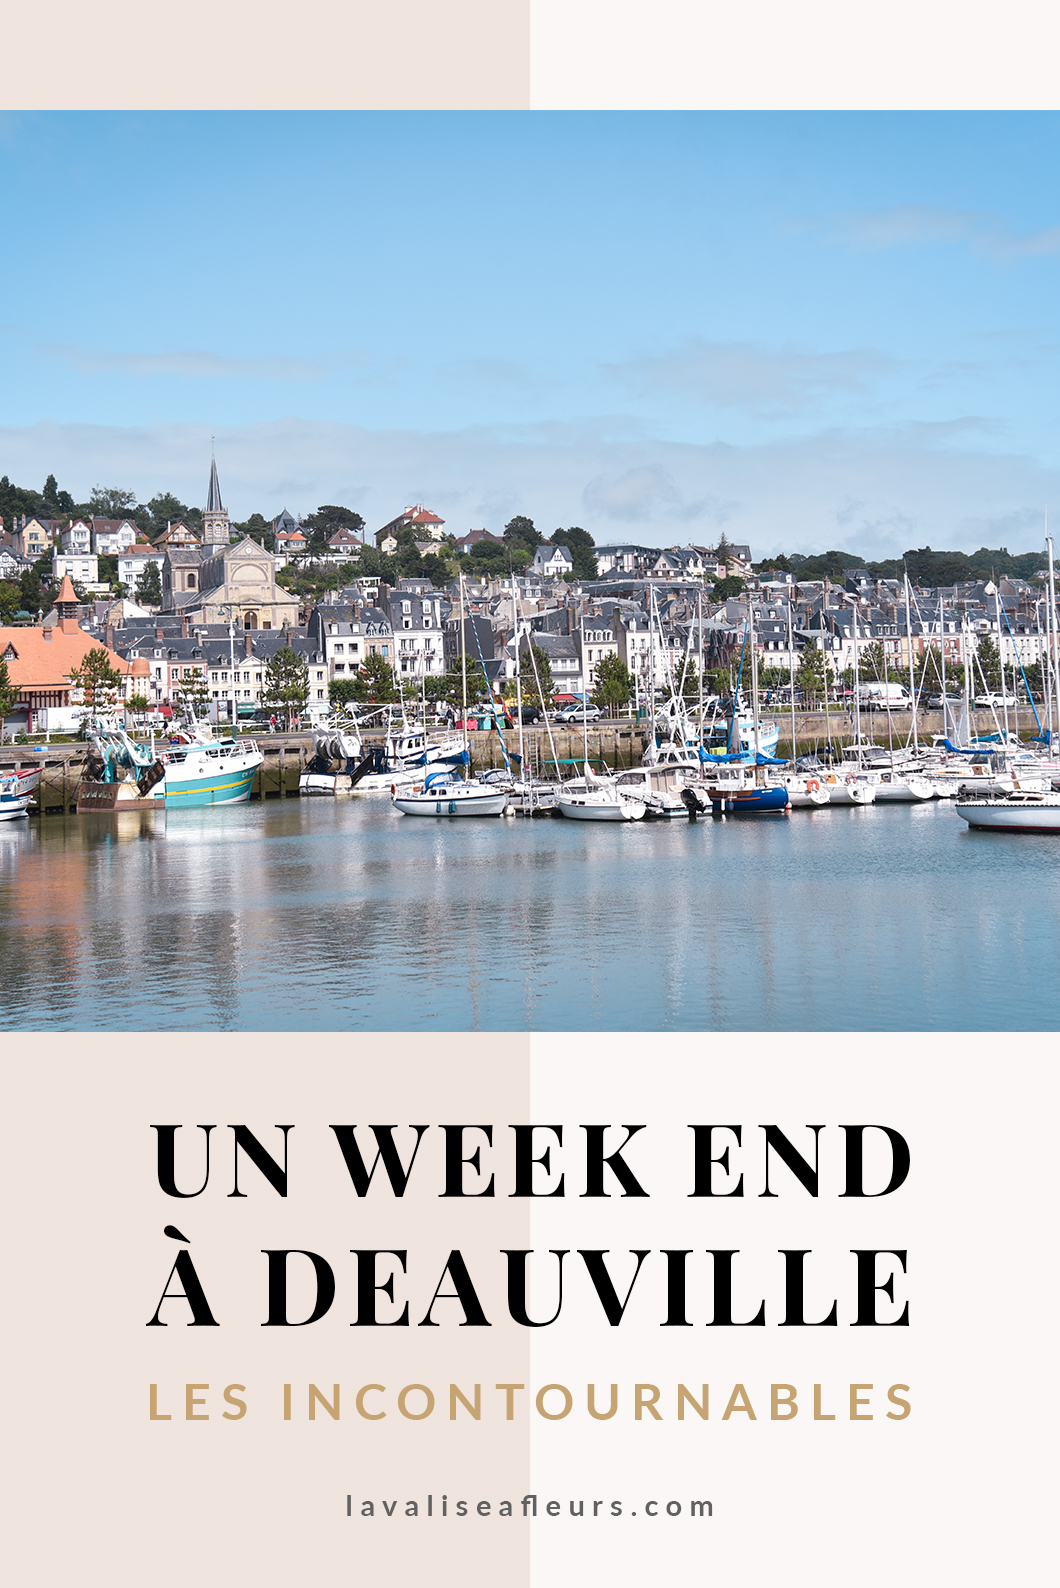 Un week end à Deauville, les incontournables à visiter